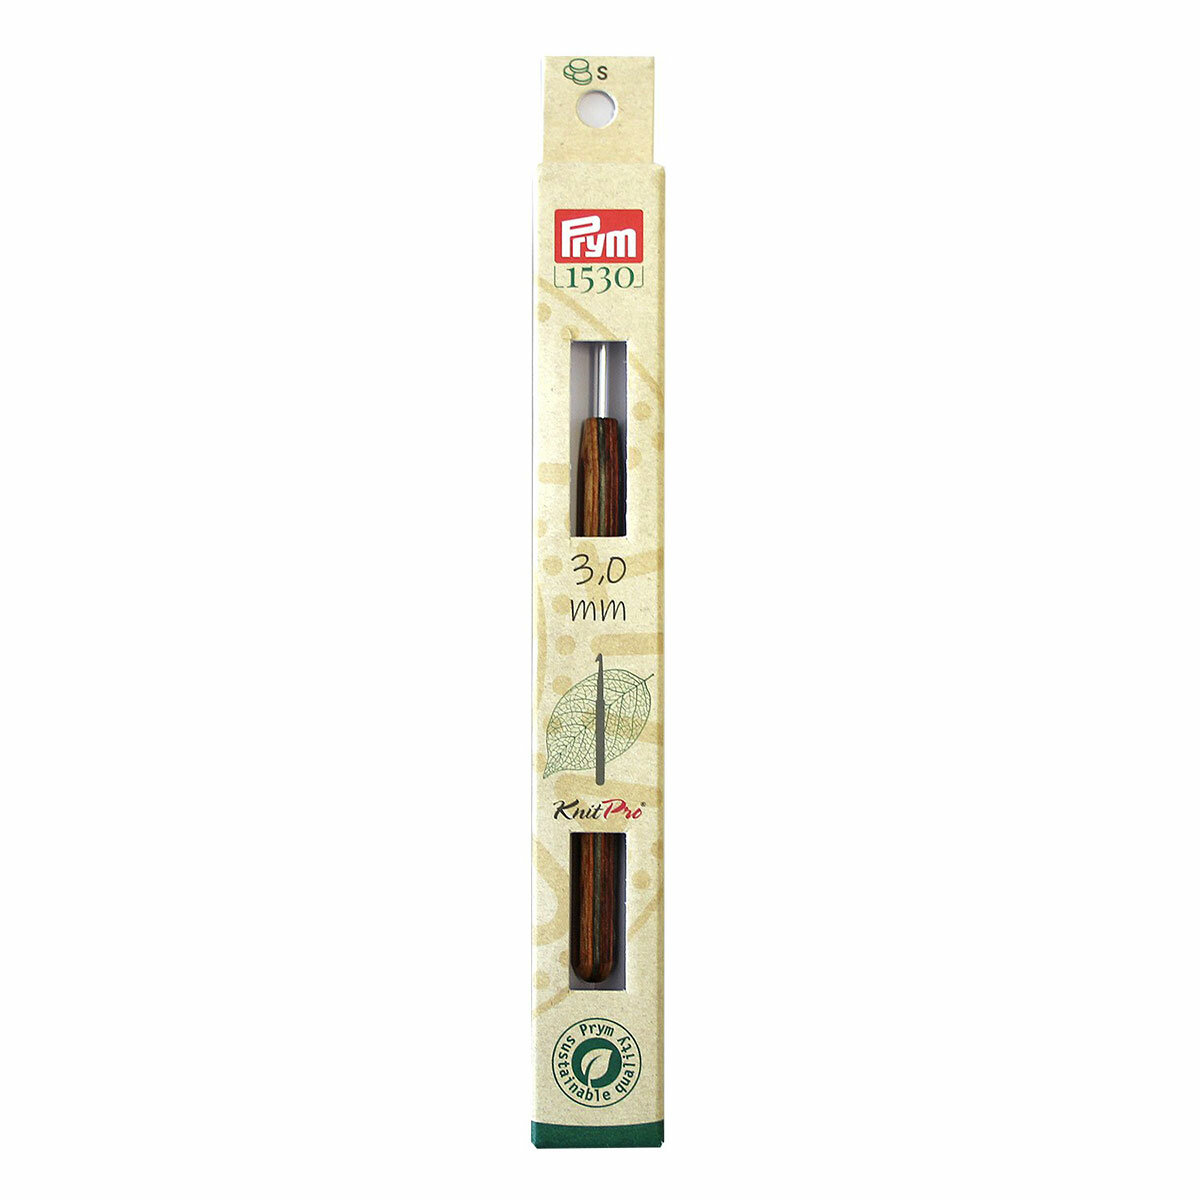 Для вязания PRYM 223512 крючок для вязания Natural алюминий d 3.0 мм в картонной упаковке с европодвесом с деревянной ручкой